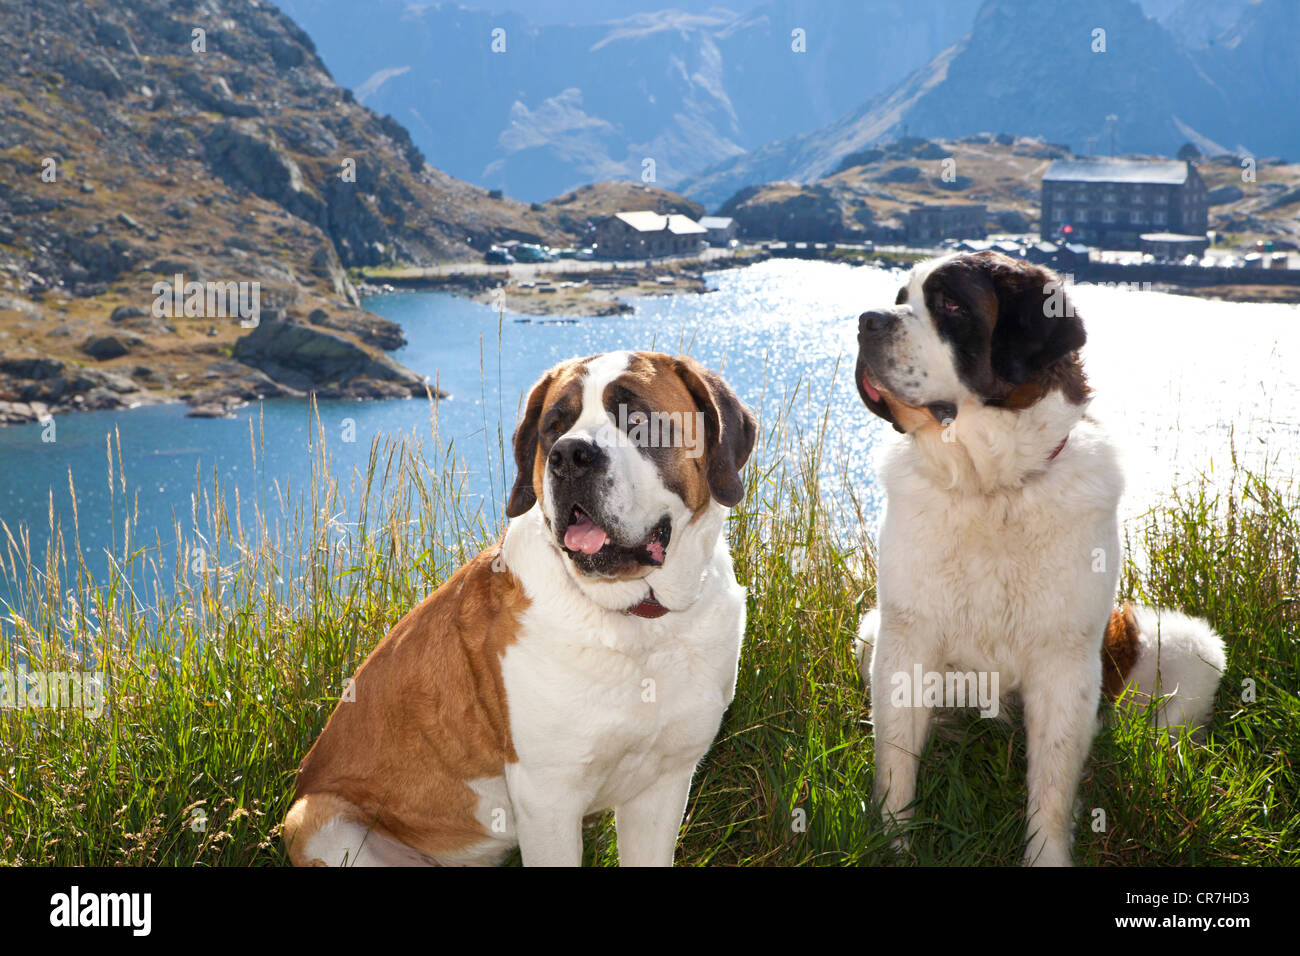 Zwei st-. Bernard Hunde der Stiftung Barry sitzen auf dem Gras, großer St.  Bernhard Pass, Wallis, Schweiz, Europa Stockfotografie - Alamy